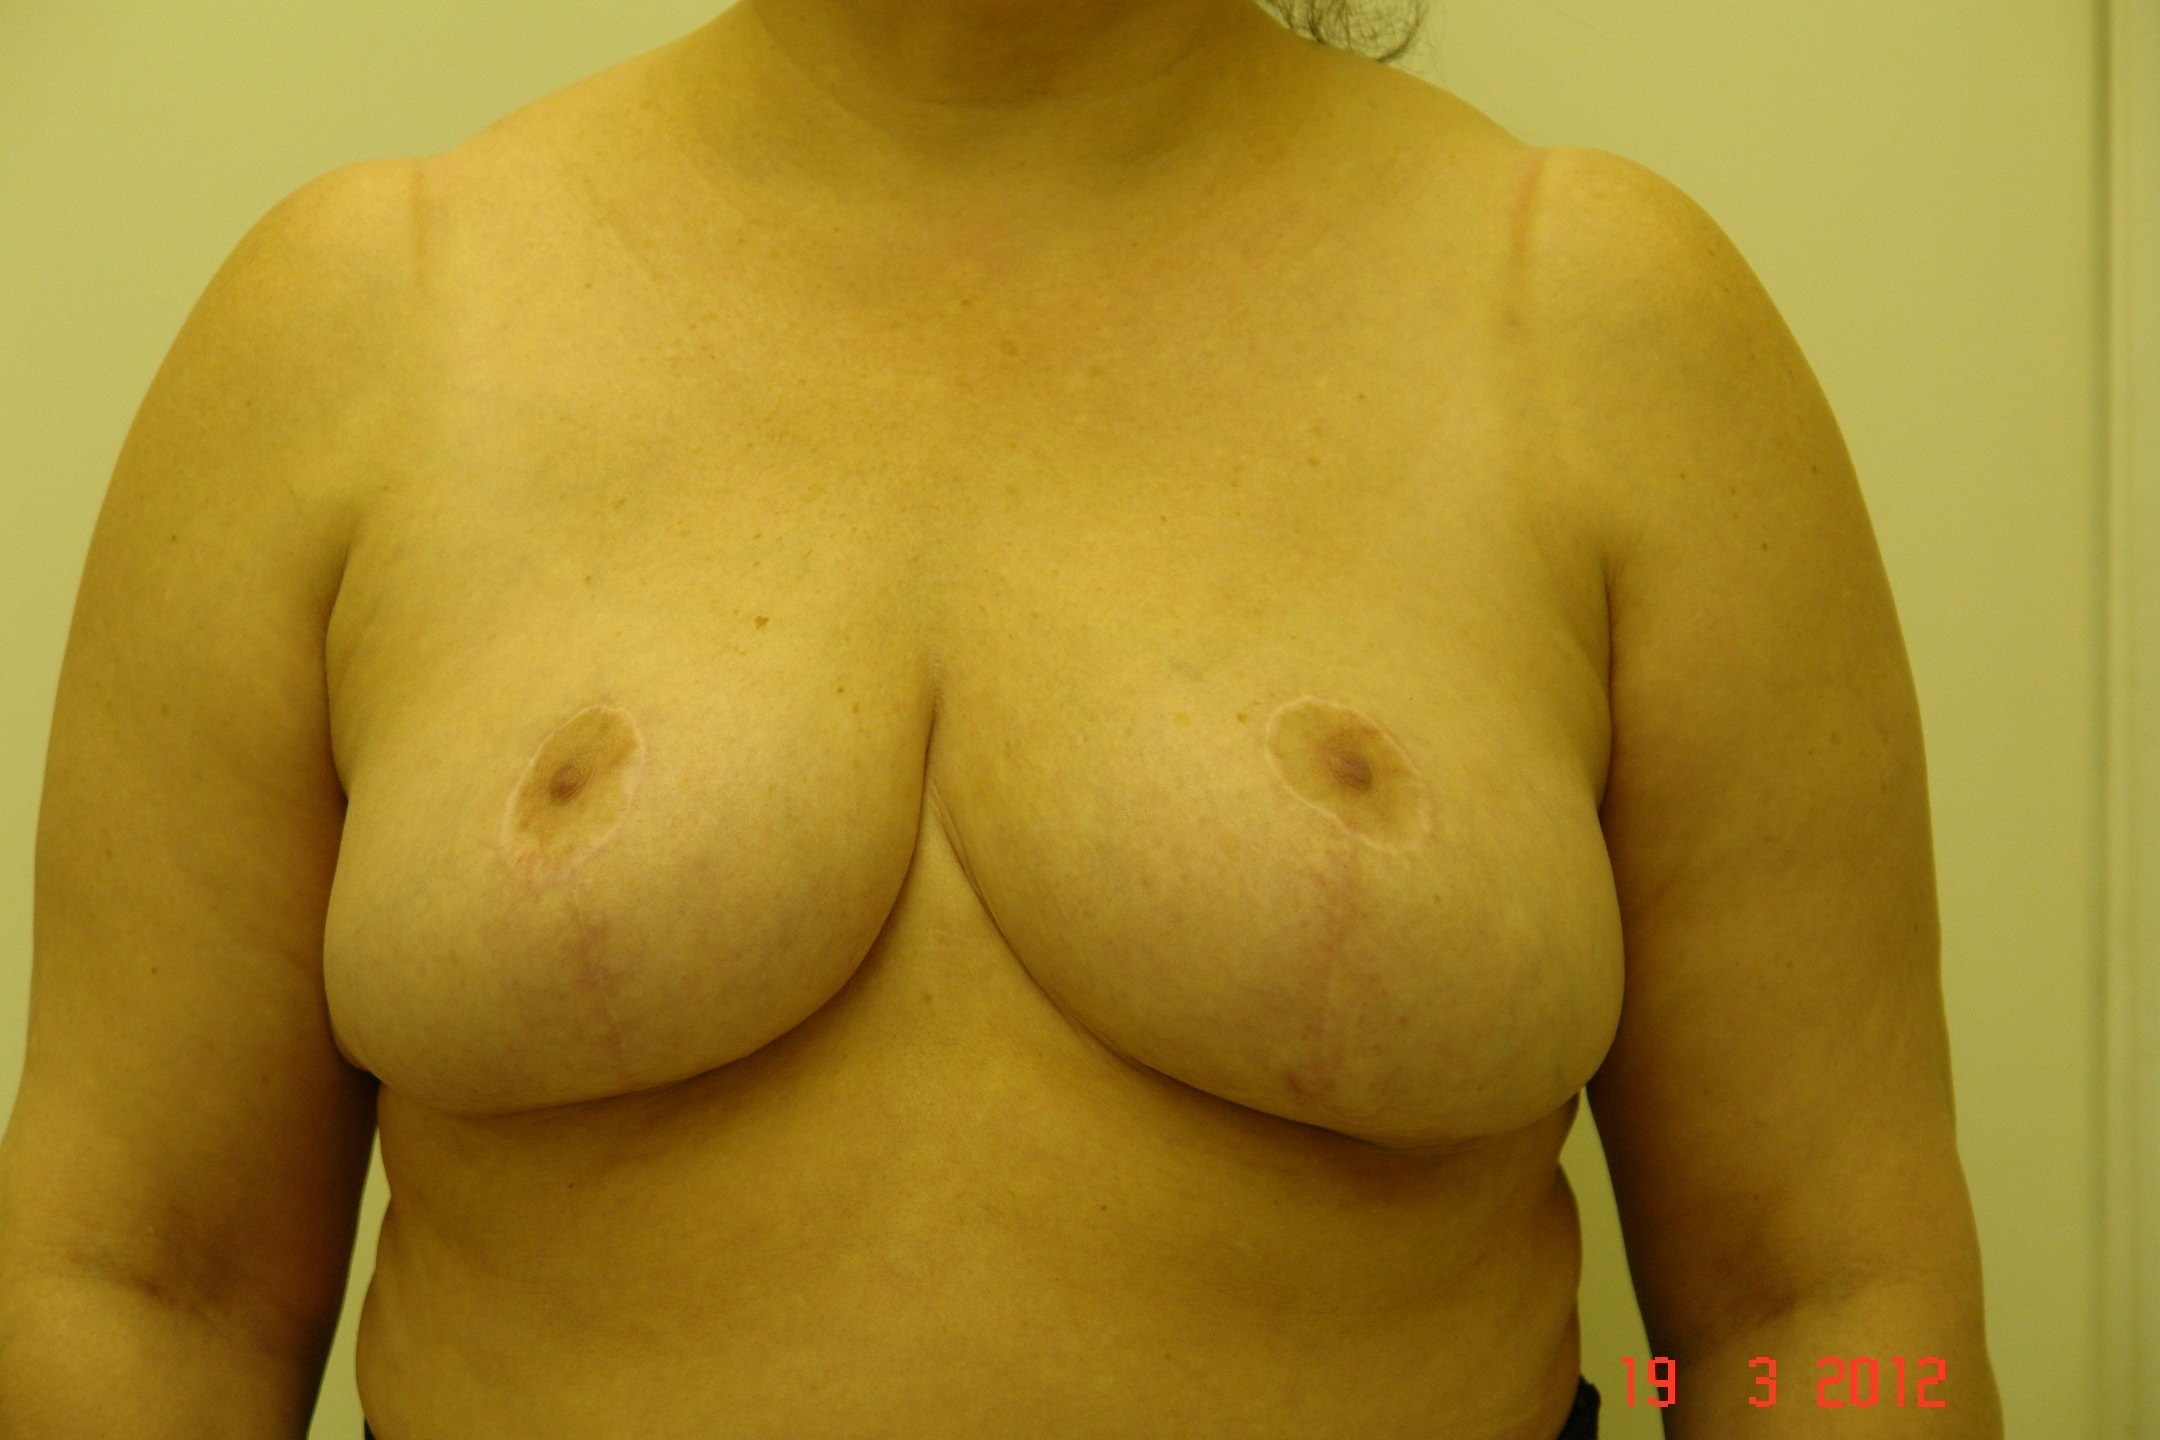 уменьшение груди во время беременности фото 24